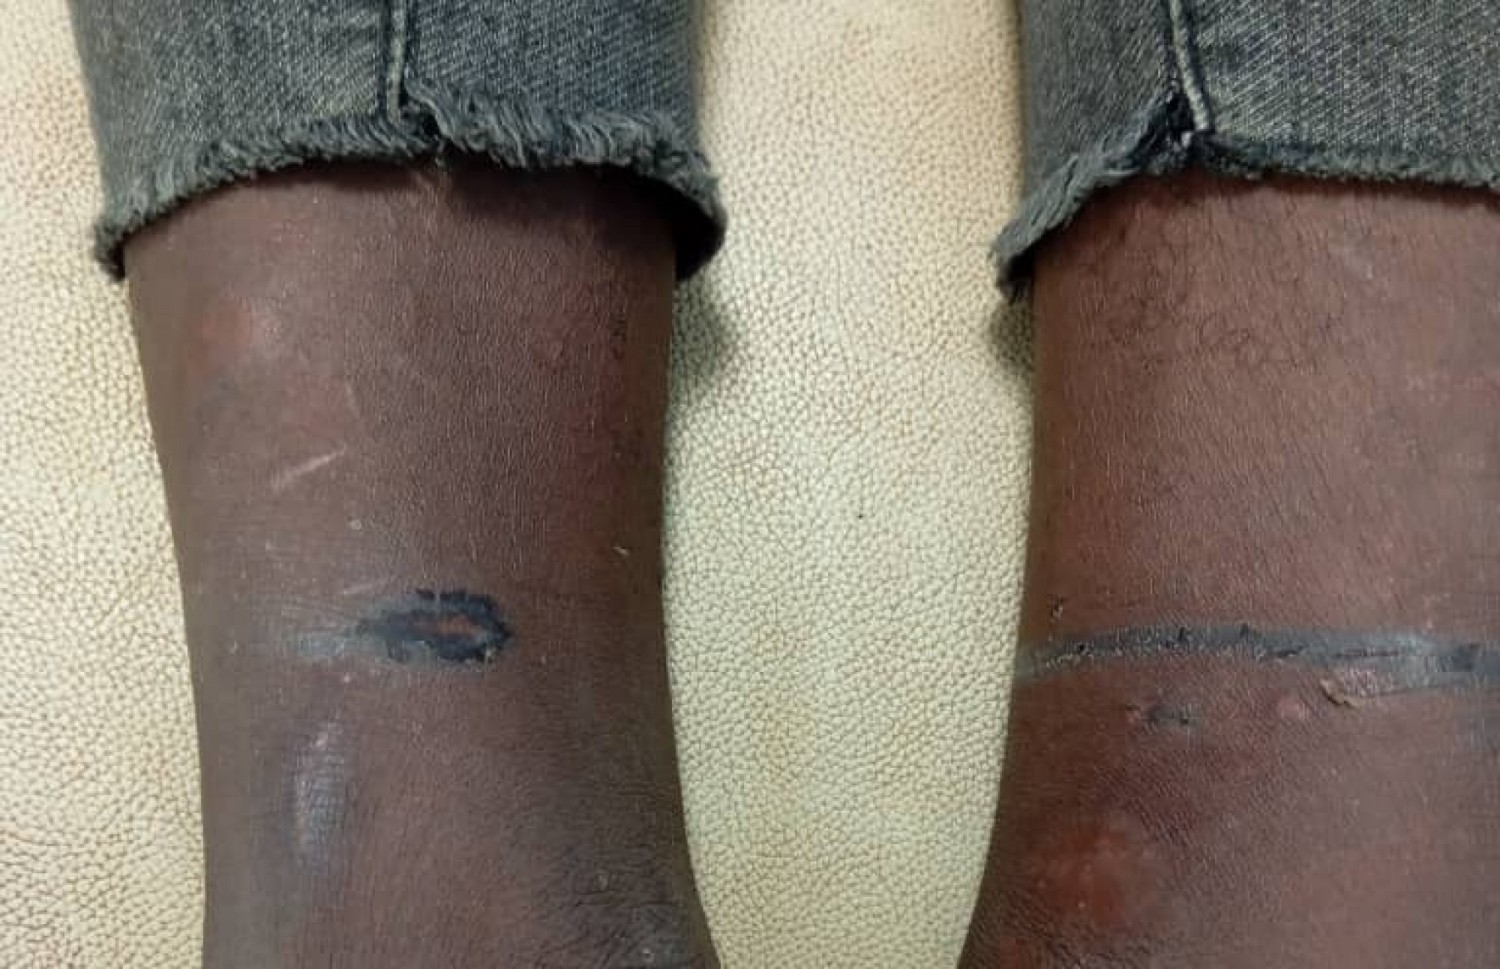 Côte d'Ivoire : Duekoué, un acte de torture révélé sur jeune vigile électrocuté, l'employeur interpellé, ses complices en fuite